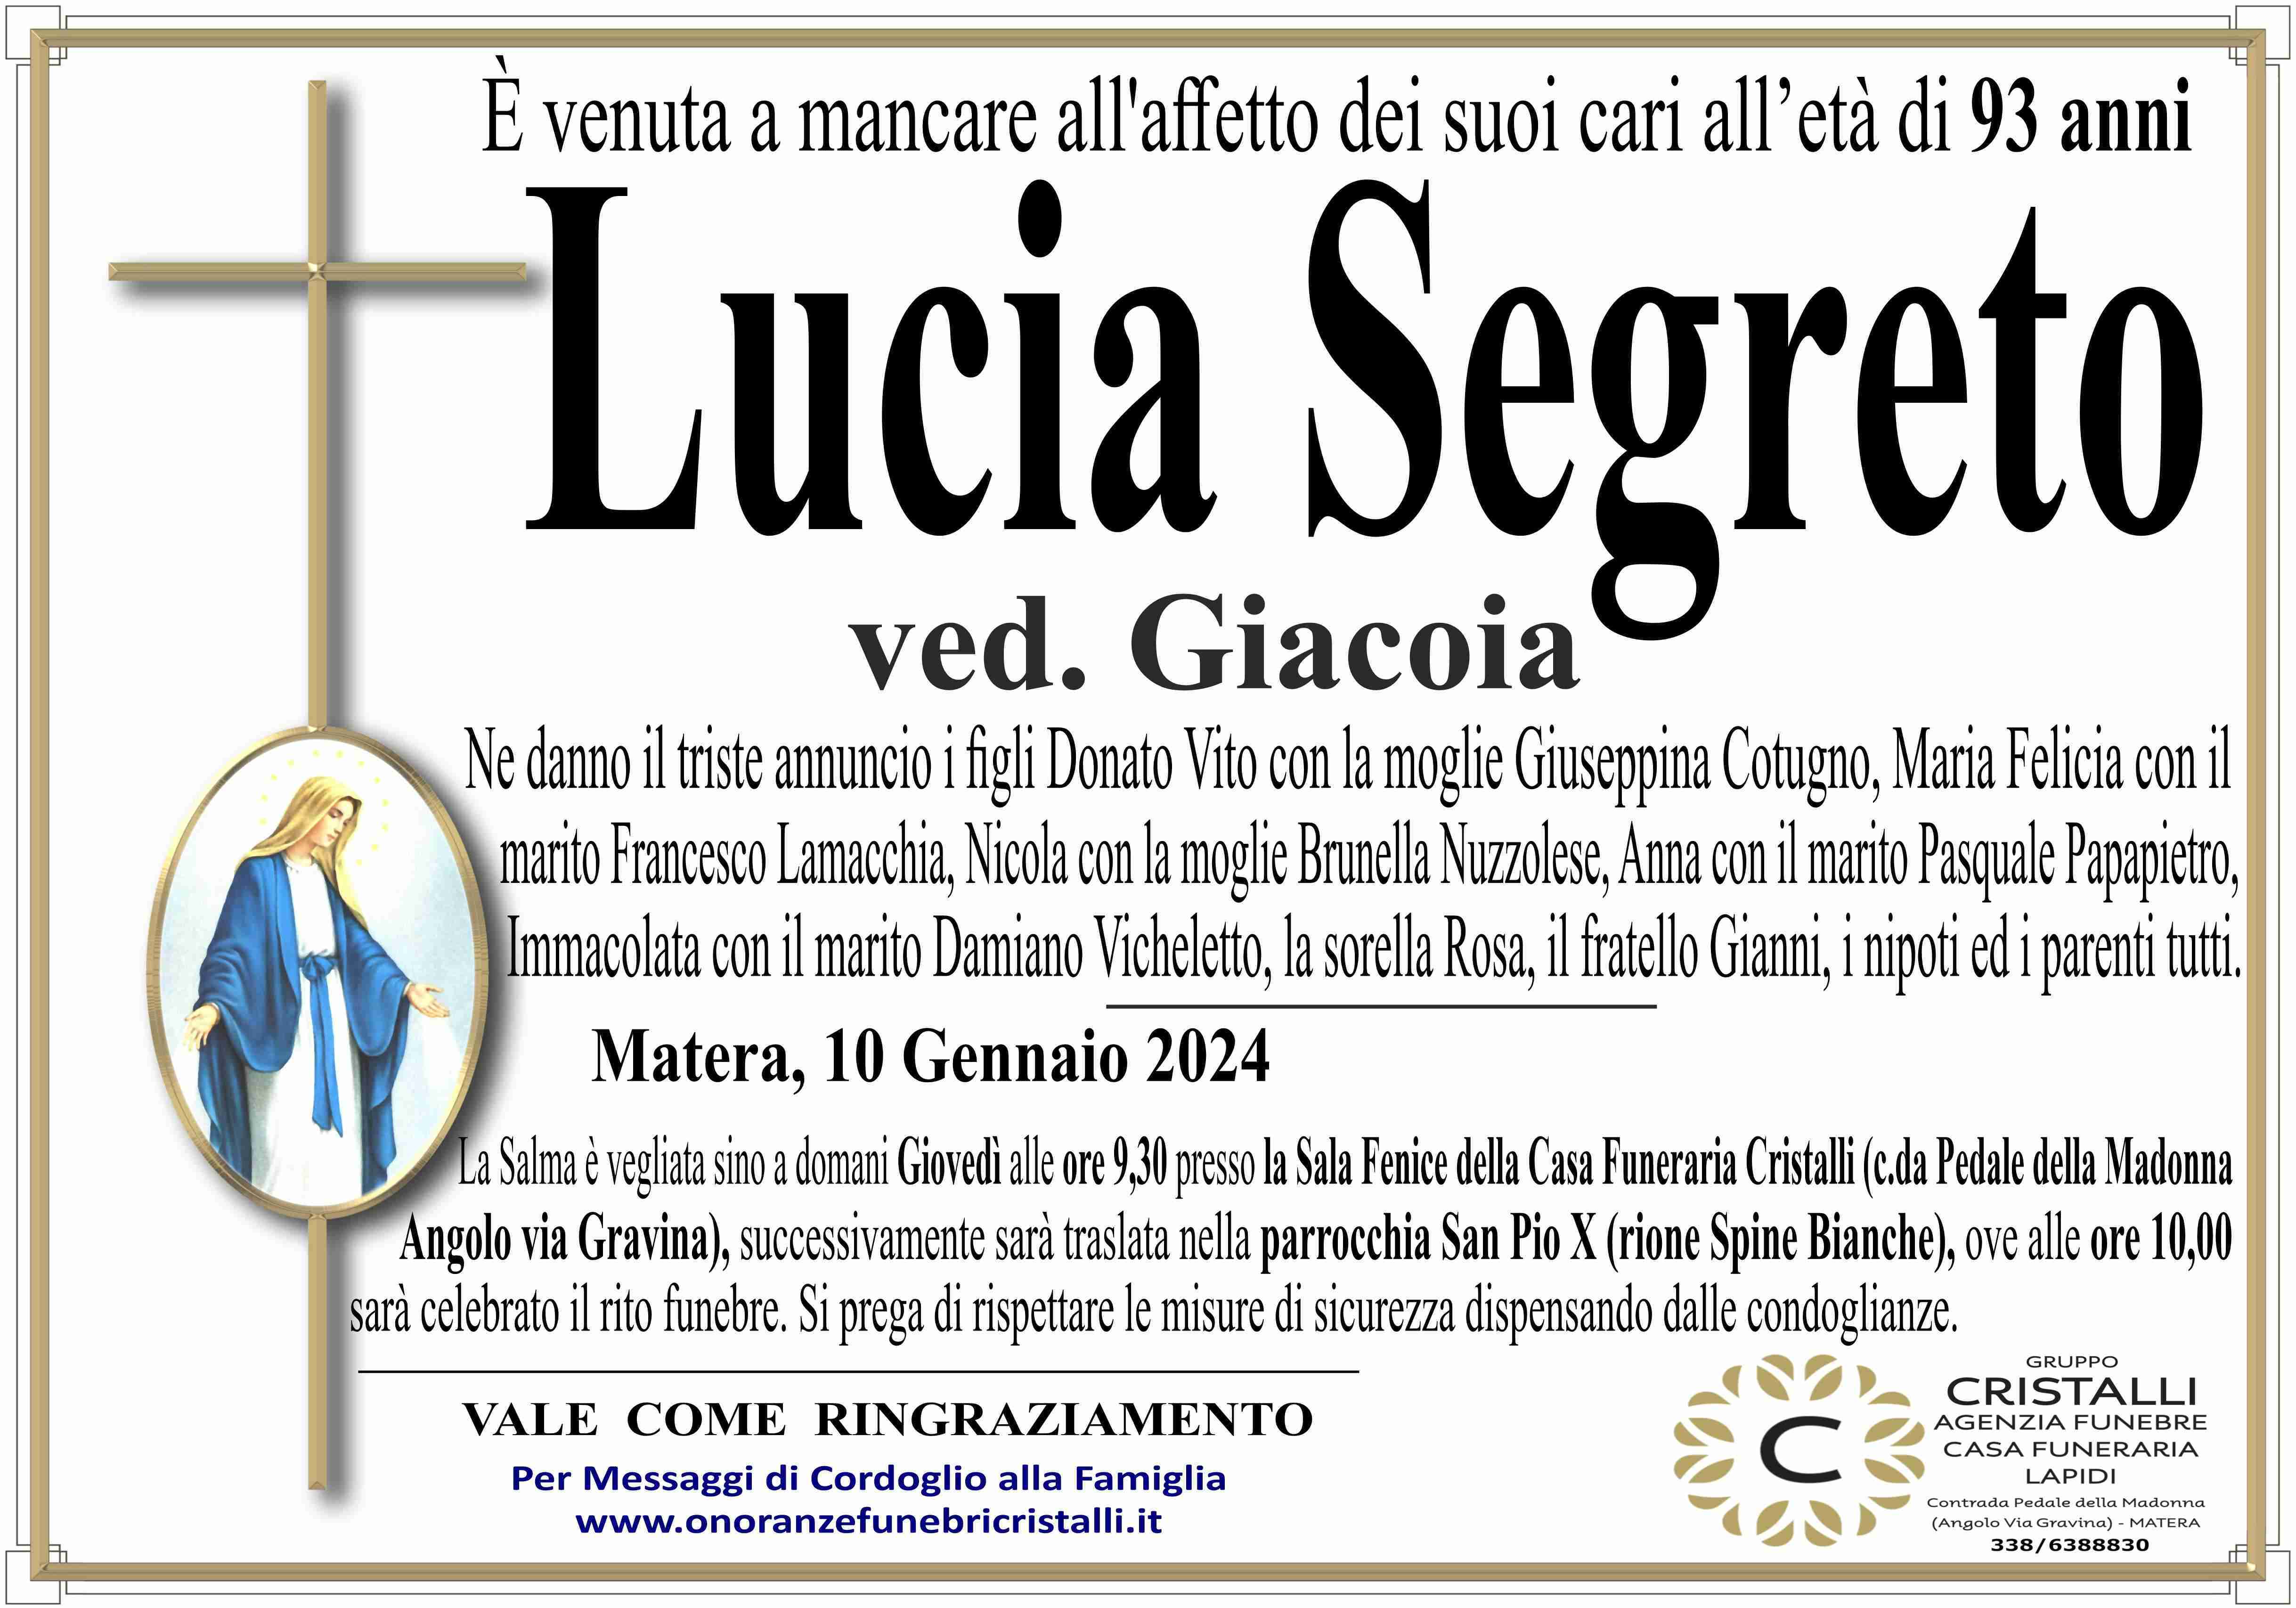 Lucia Segreto